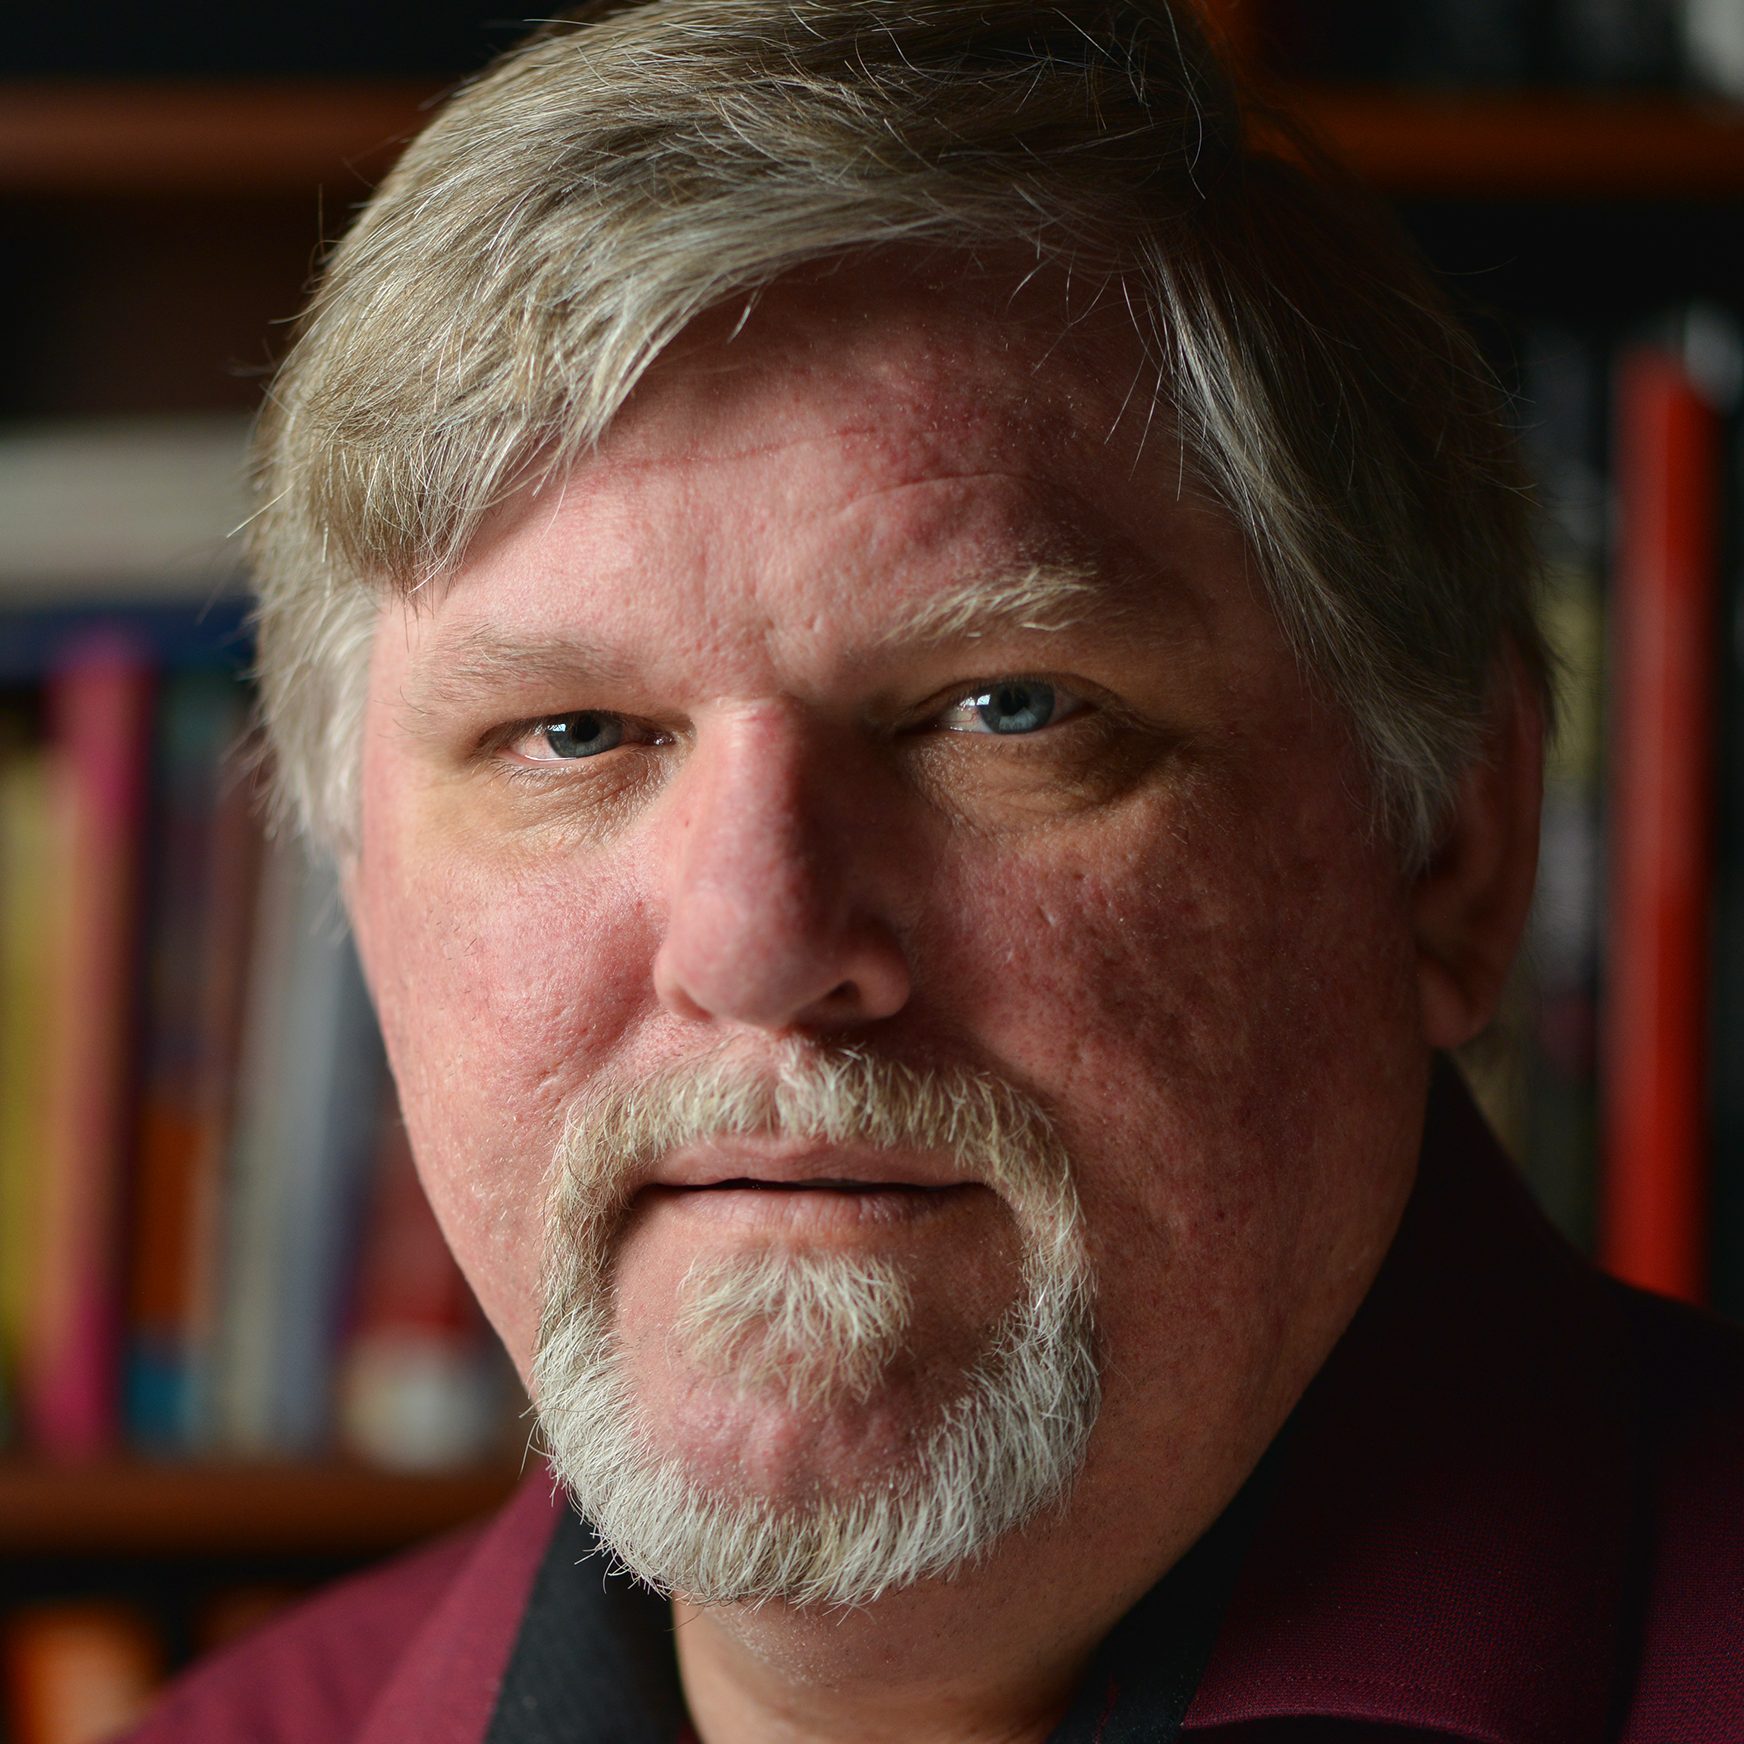 Author Dave Wickenden's headshot